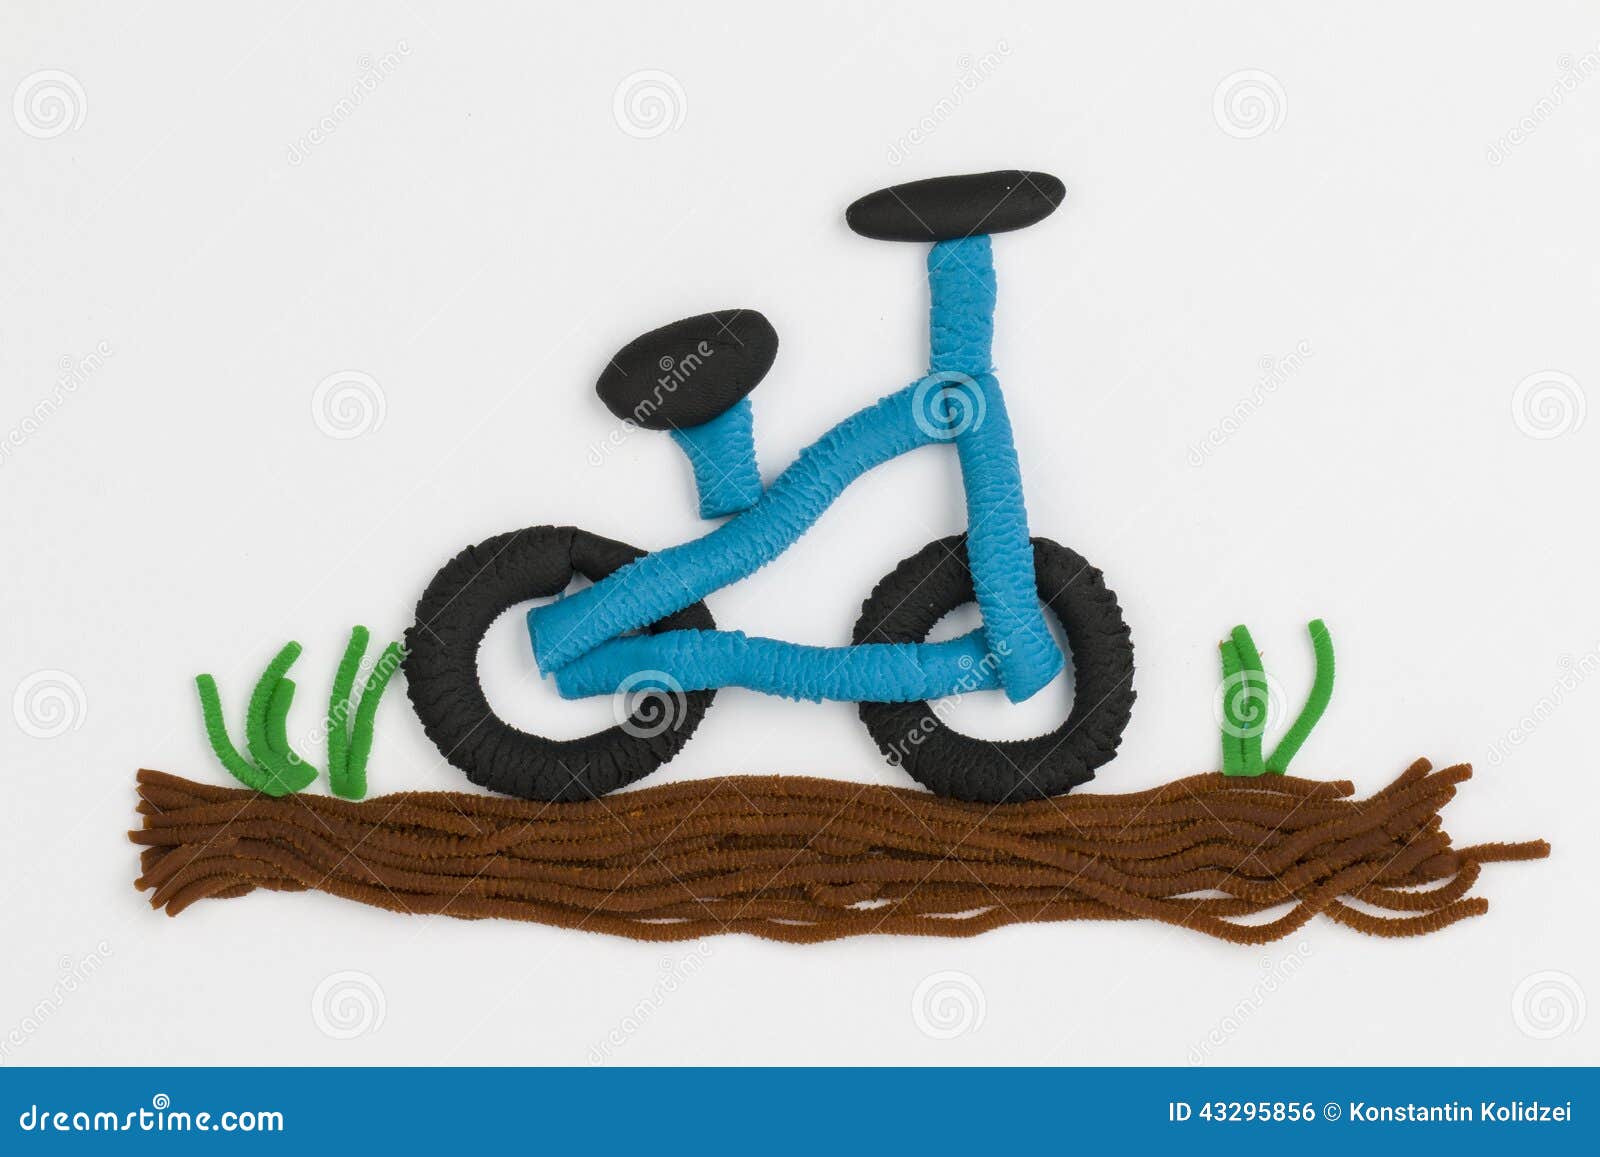 Велосипед из пластилина